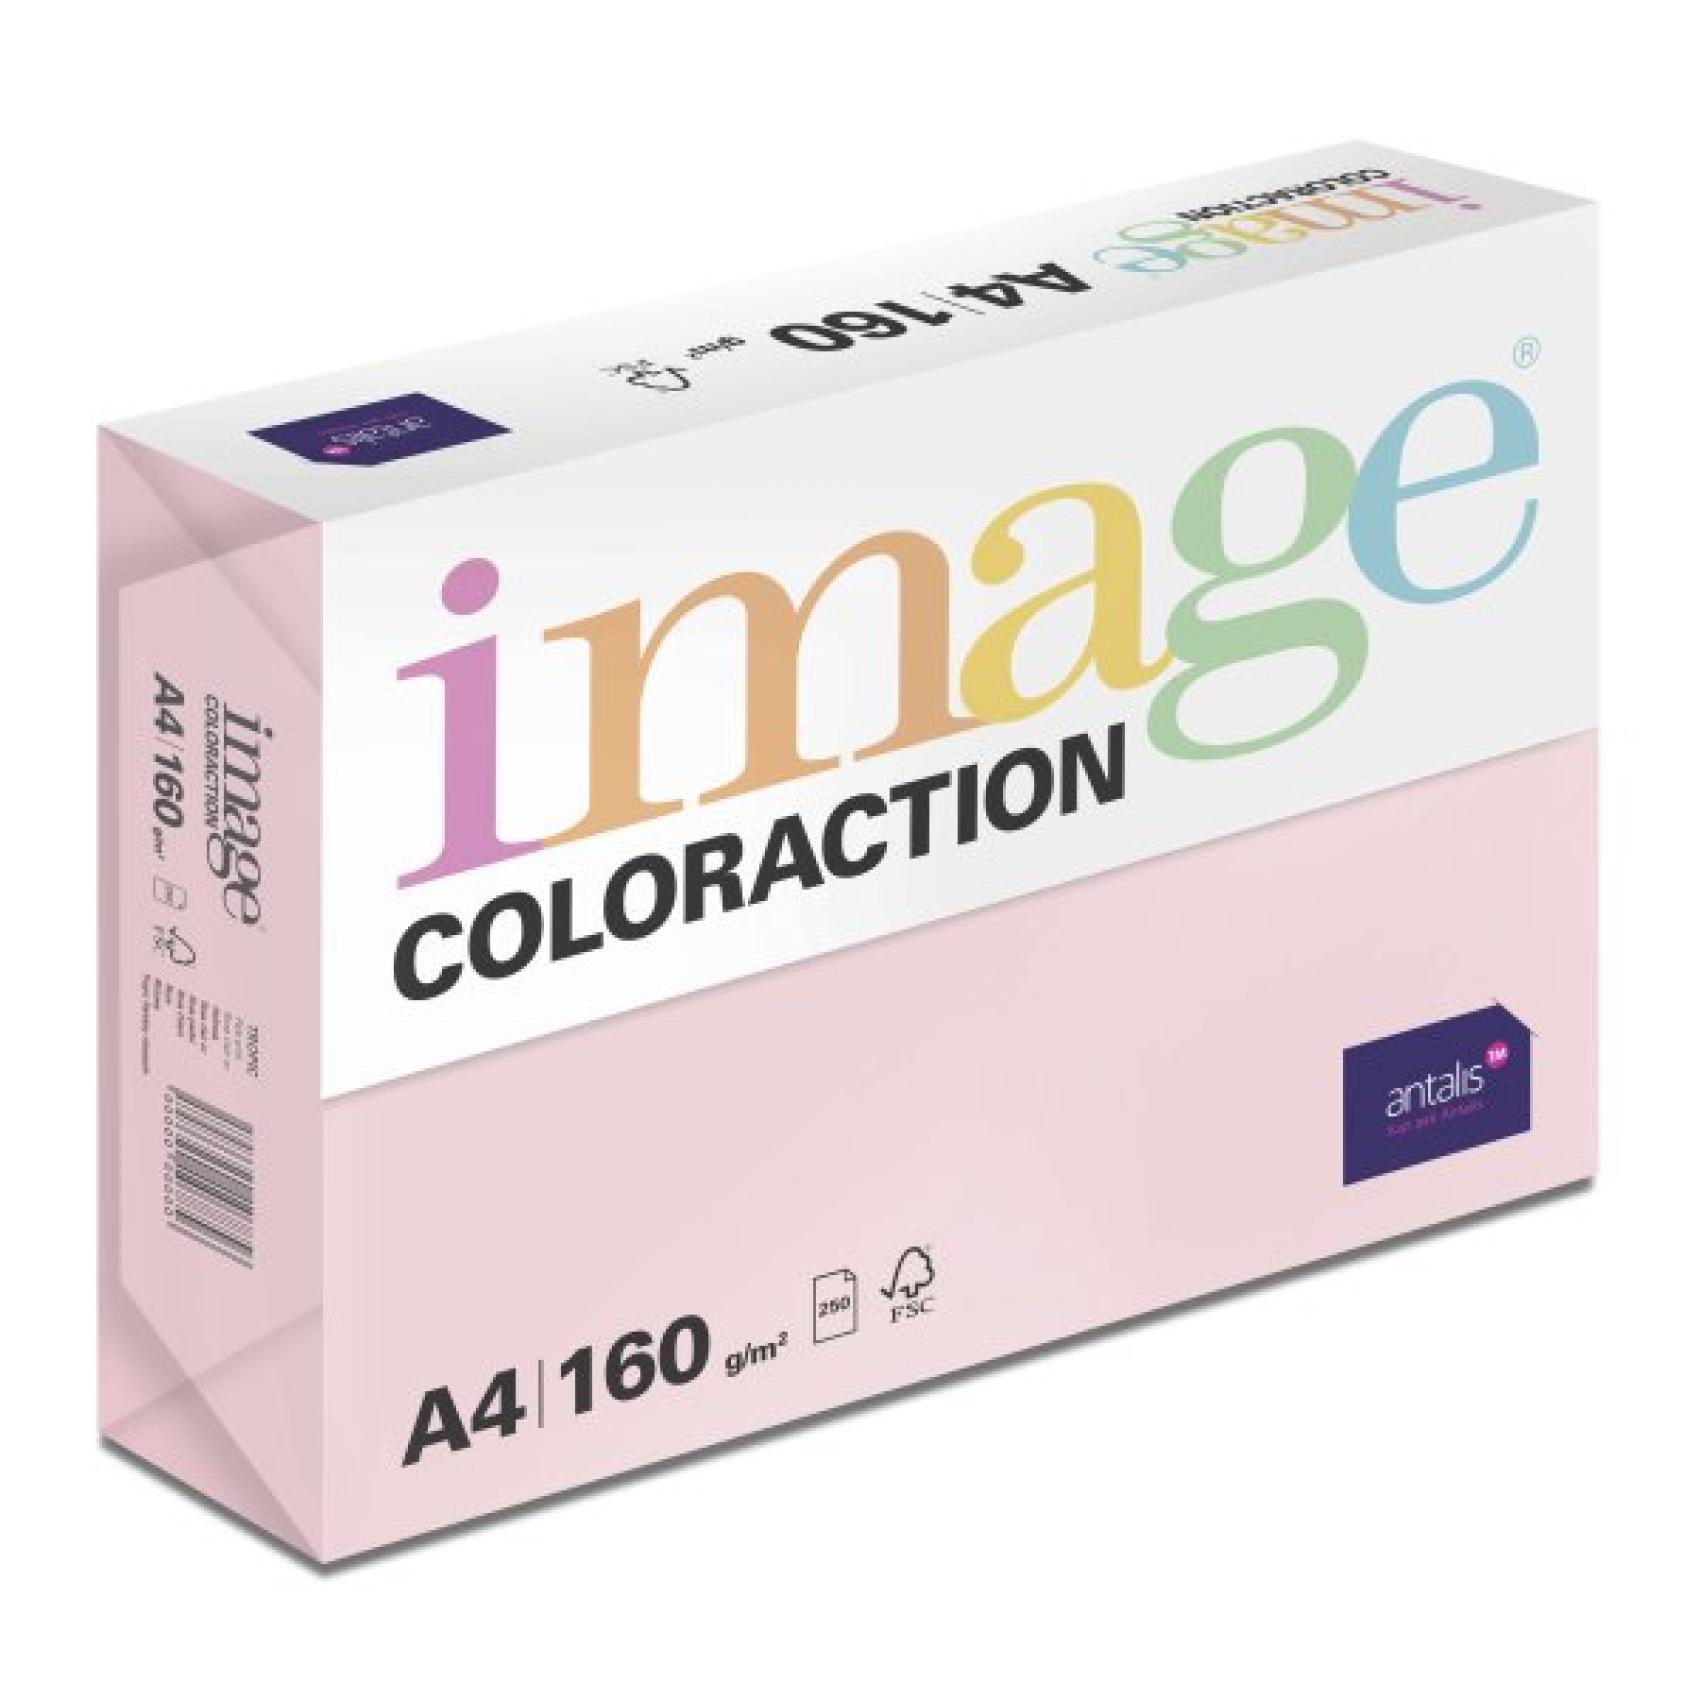 Papr barevn Color A4/160gr Tropic pastelov rov OPI74 - Kliknutm na obrzek zavete